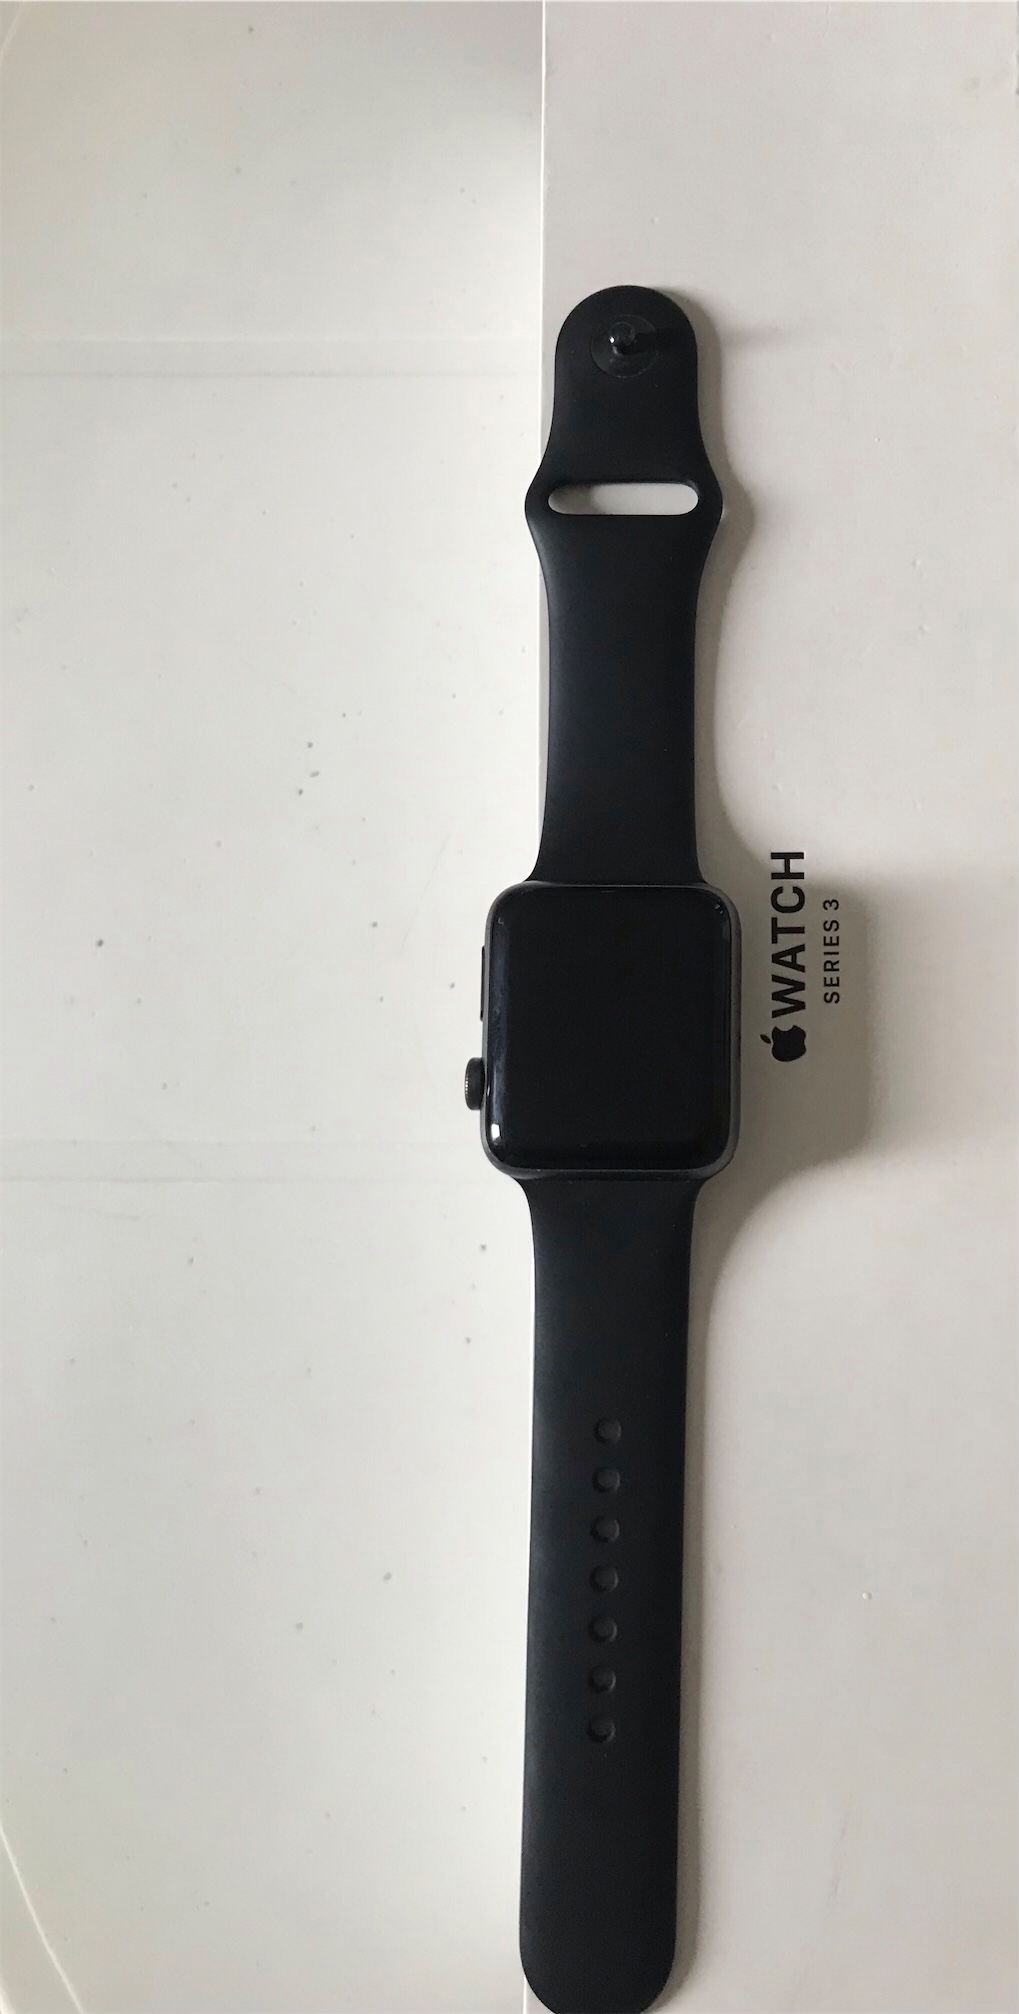 Apple Watch serie 3